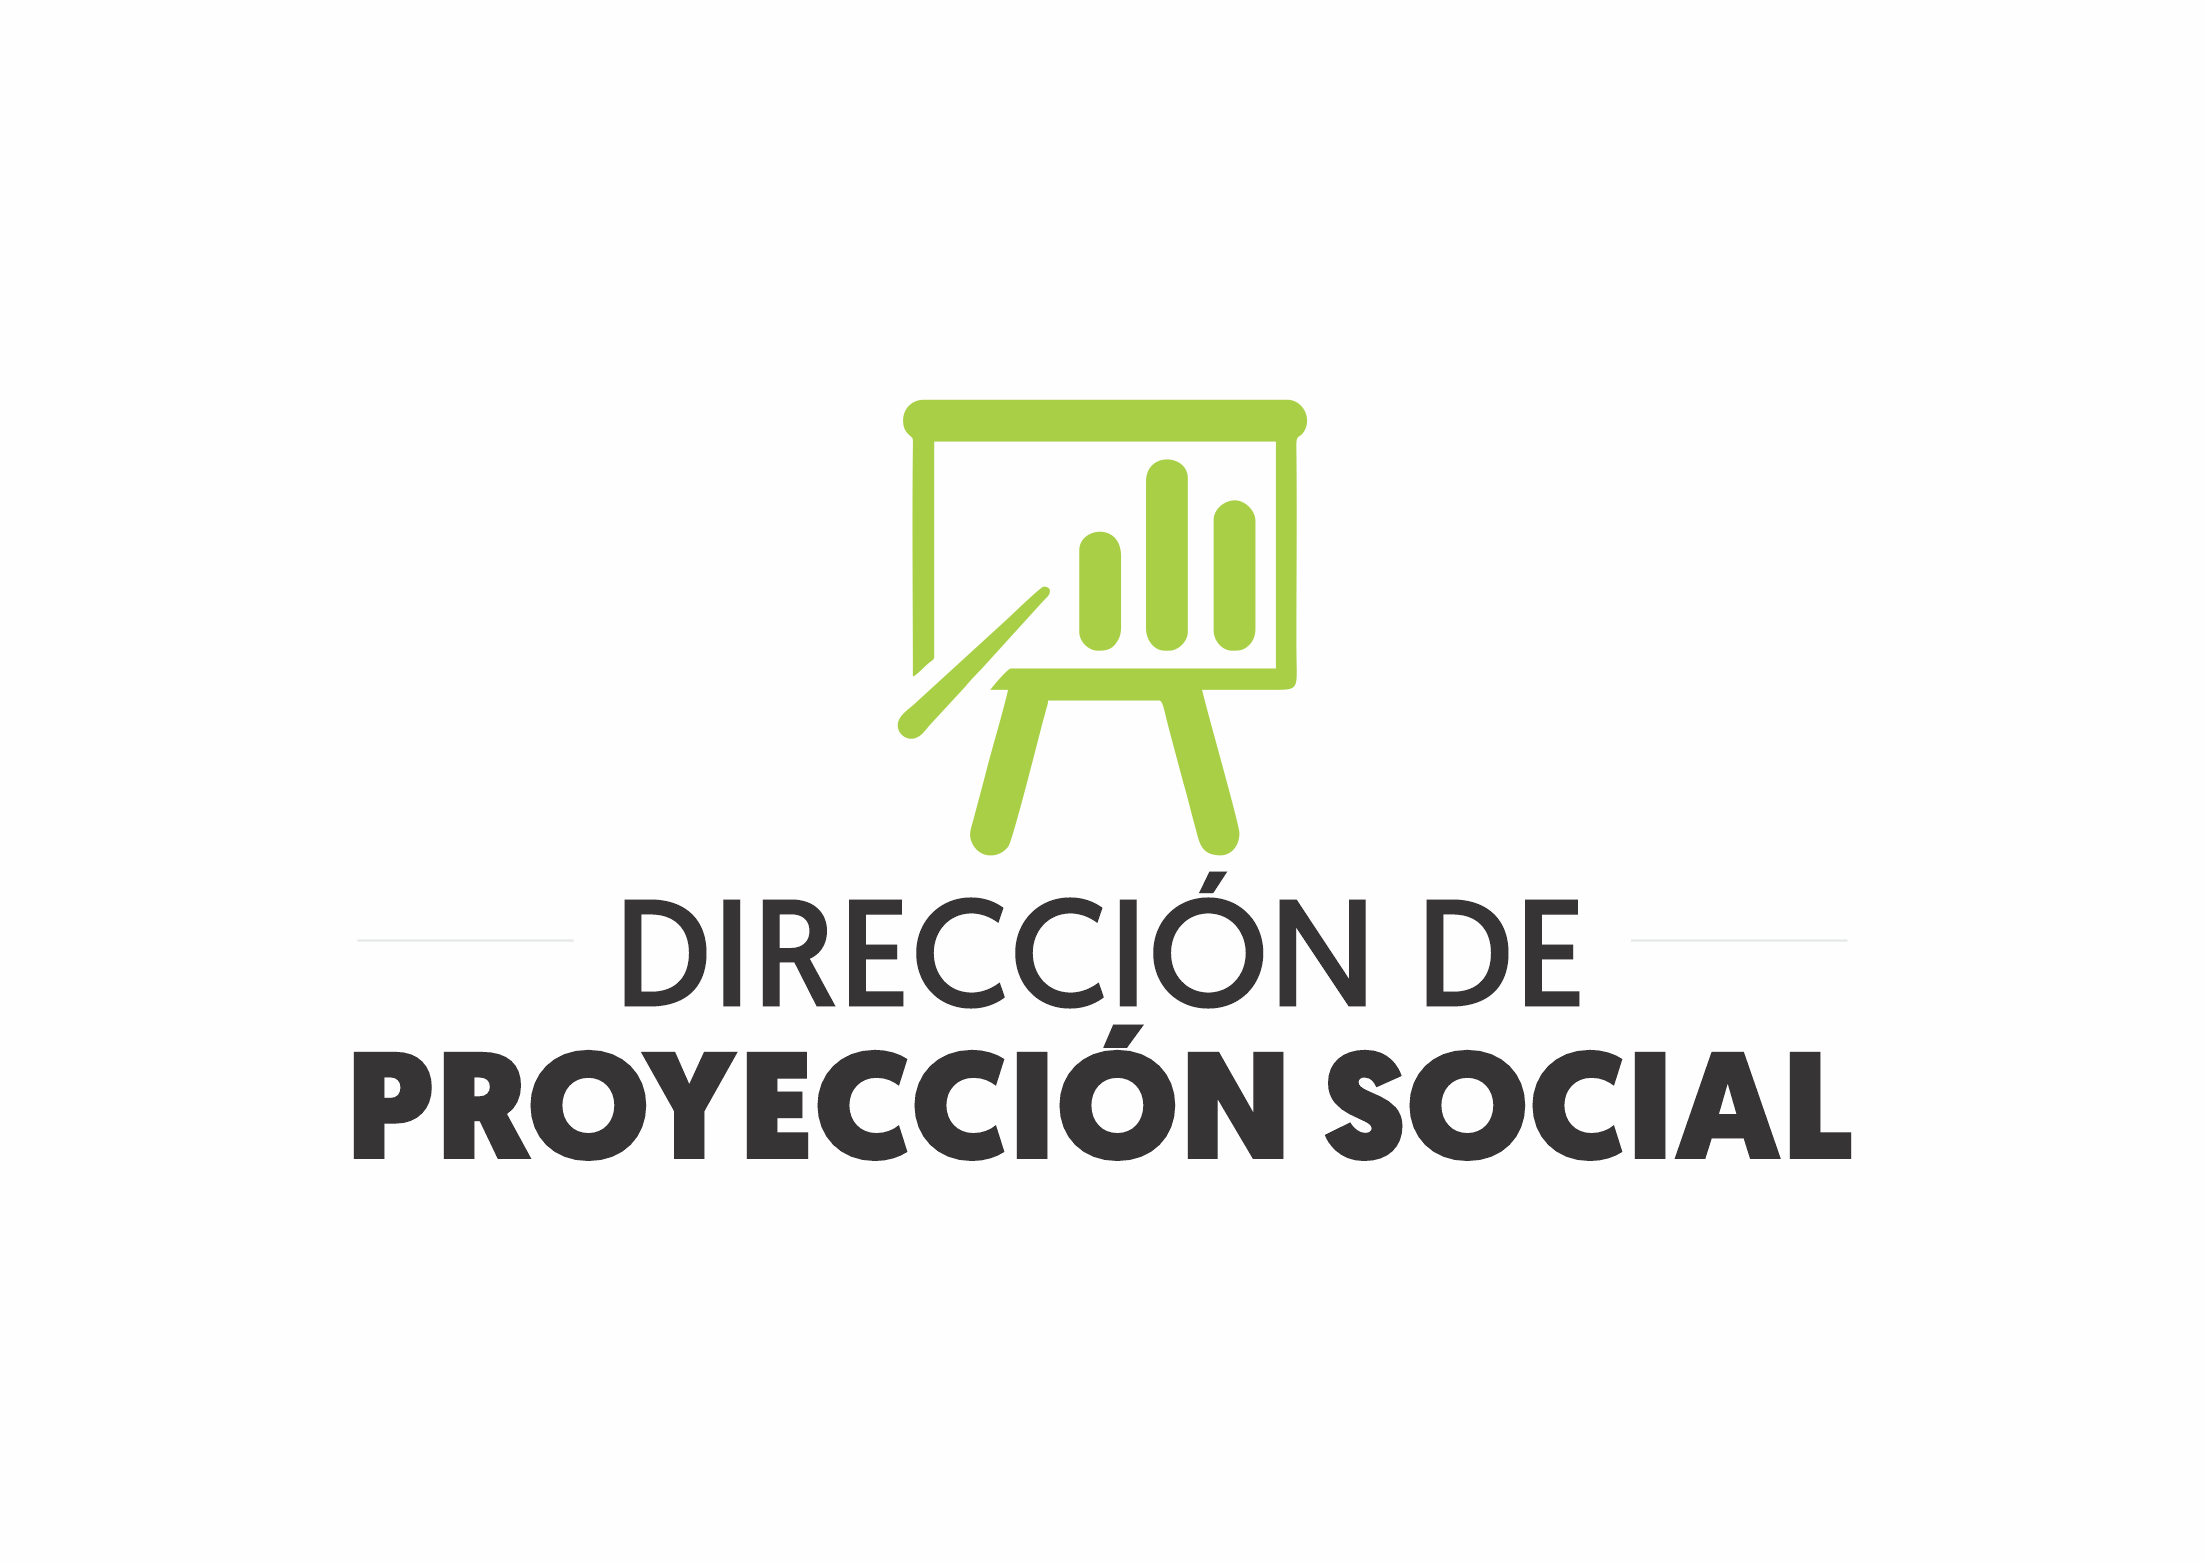 LOGO DIRECCIÓN DE PROYECCIÓN SOCIAL